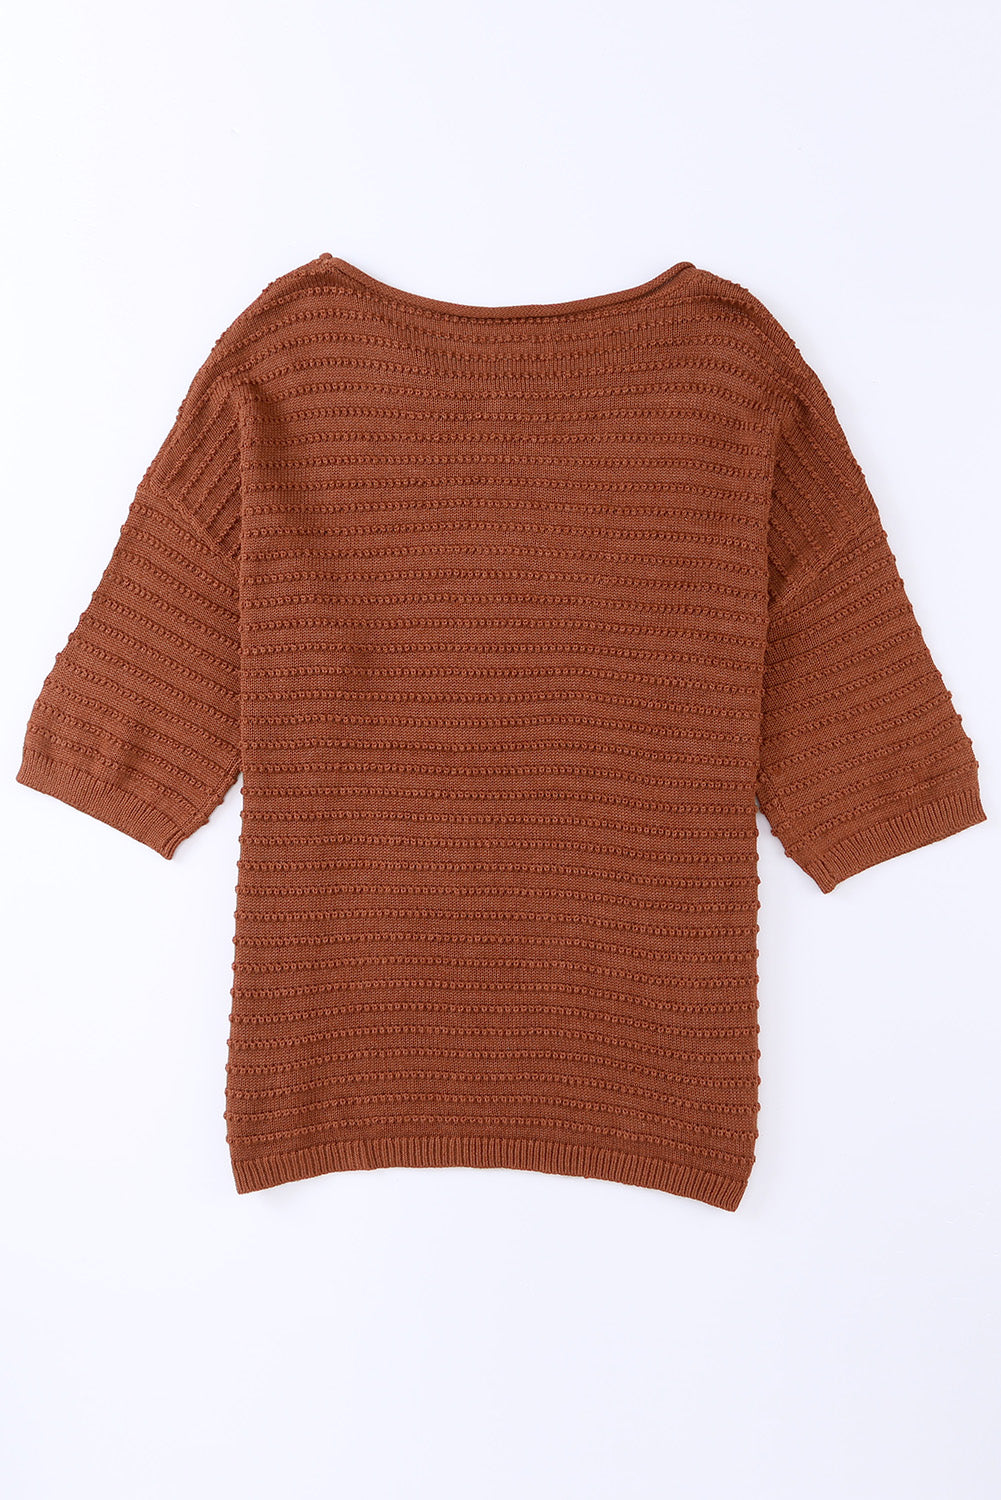 T-shirt à épaules tombantes en tricot texturé abricot